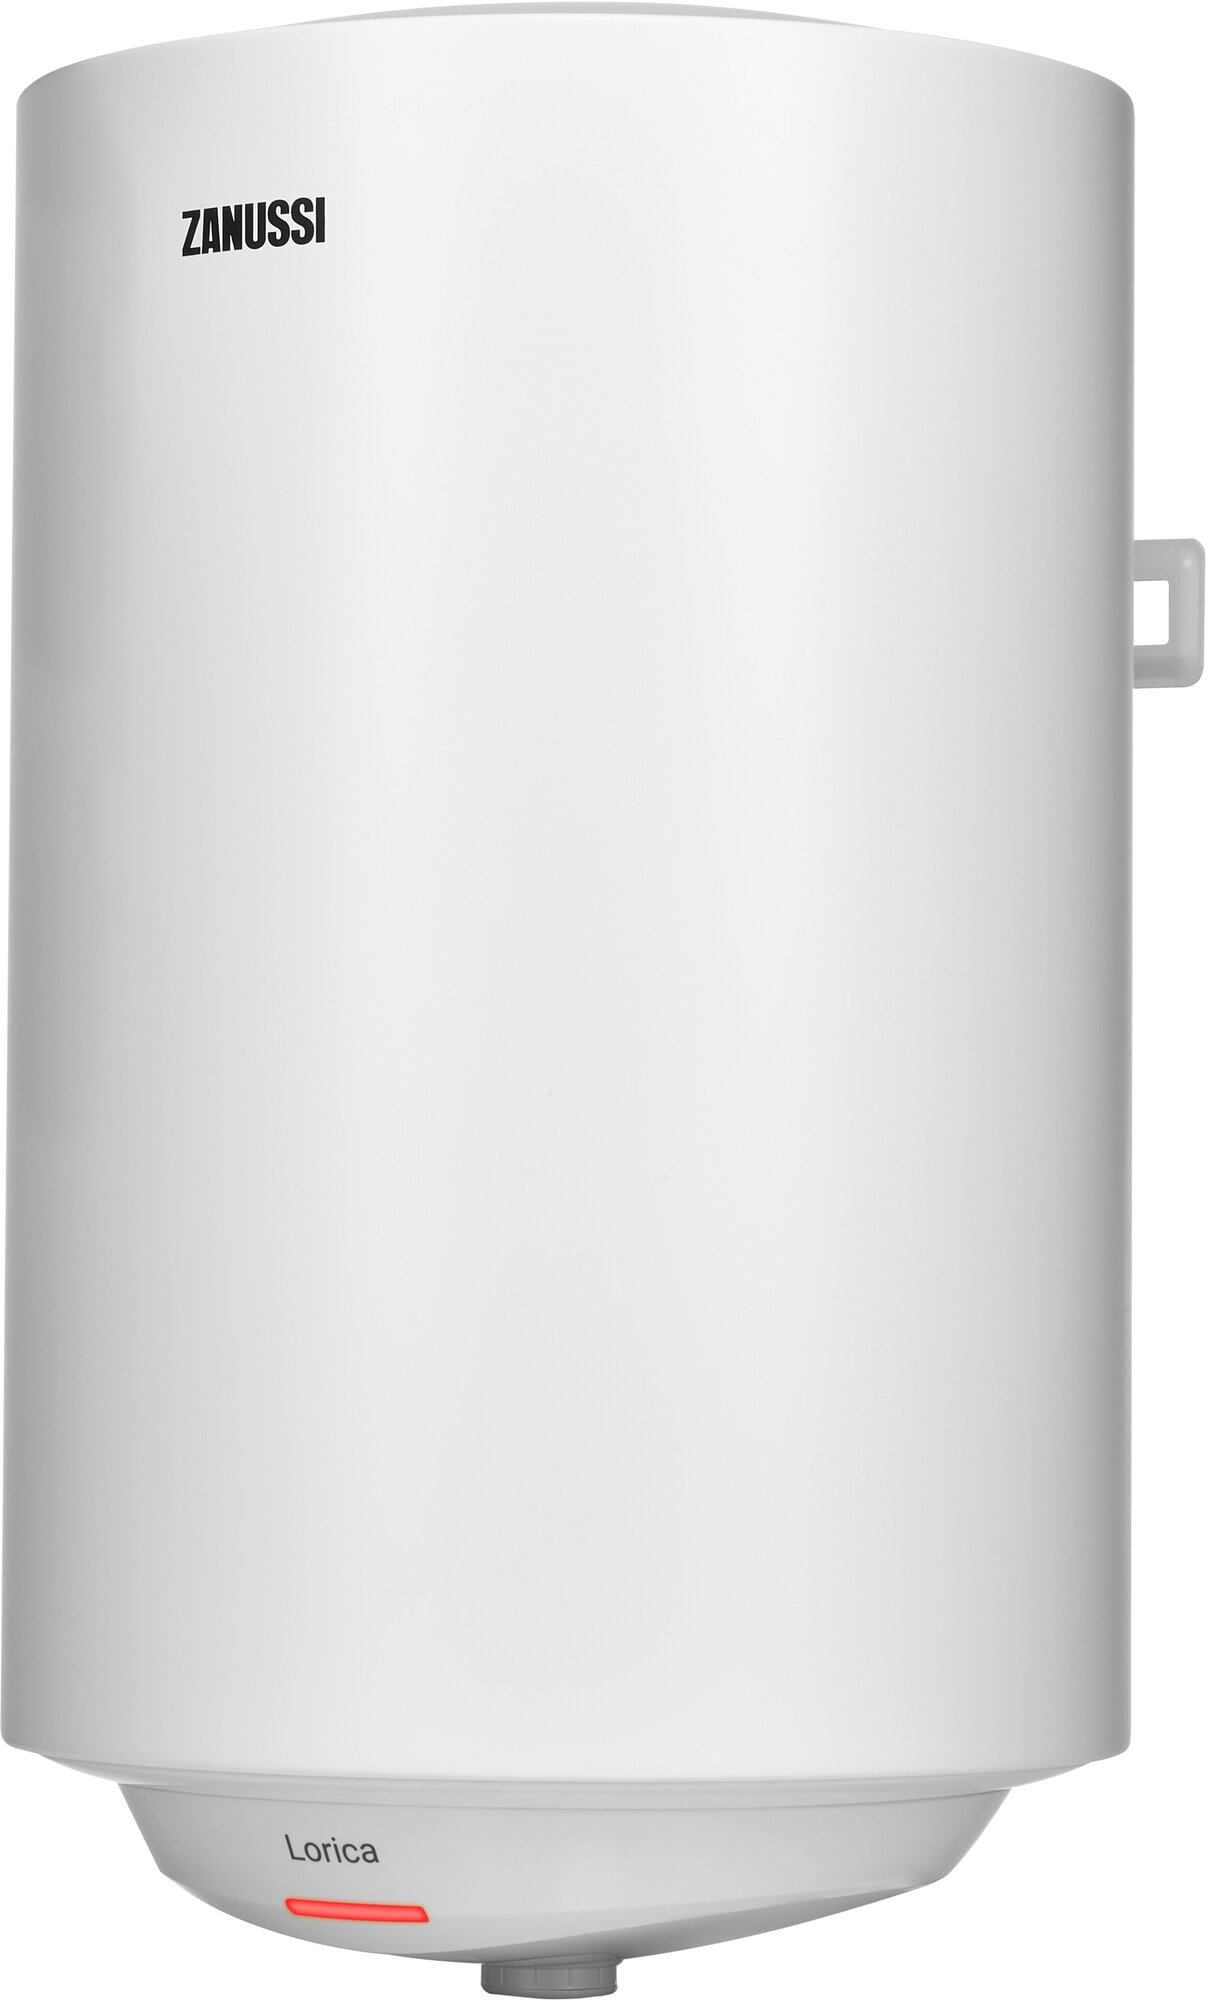 Накопительный электрический водонагреватель Zanussi ZWH/S 50 Lorica, белый